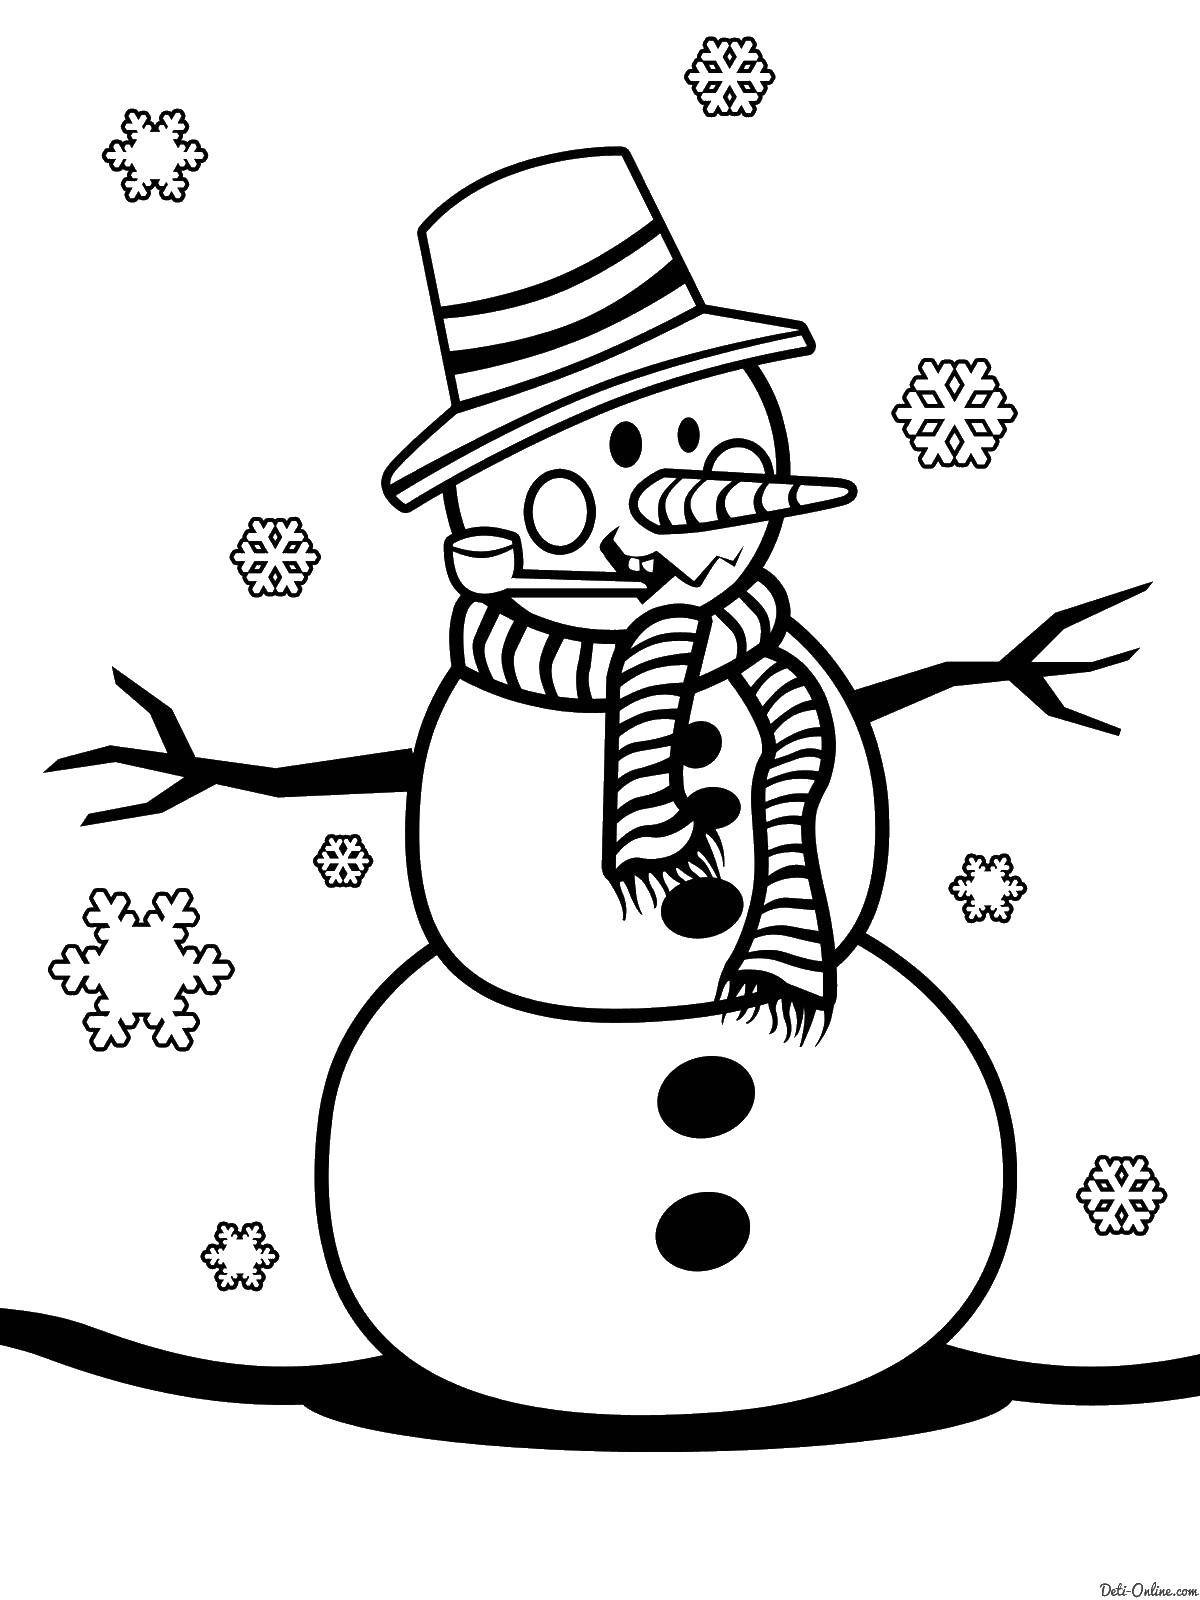 Розмальовки  Сніговик. Завантажити розмальовку сніговик, муштук, шарф.  Роздрукувати ,розфарбовування фігур,